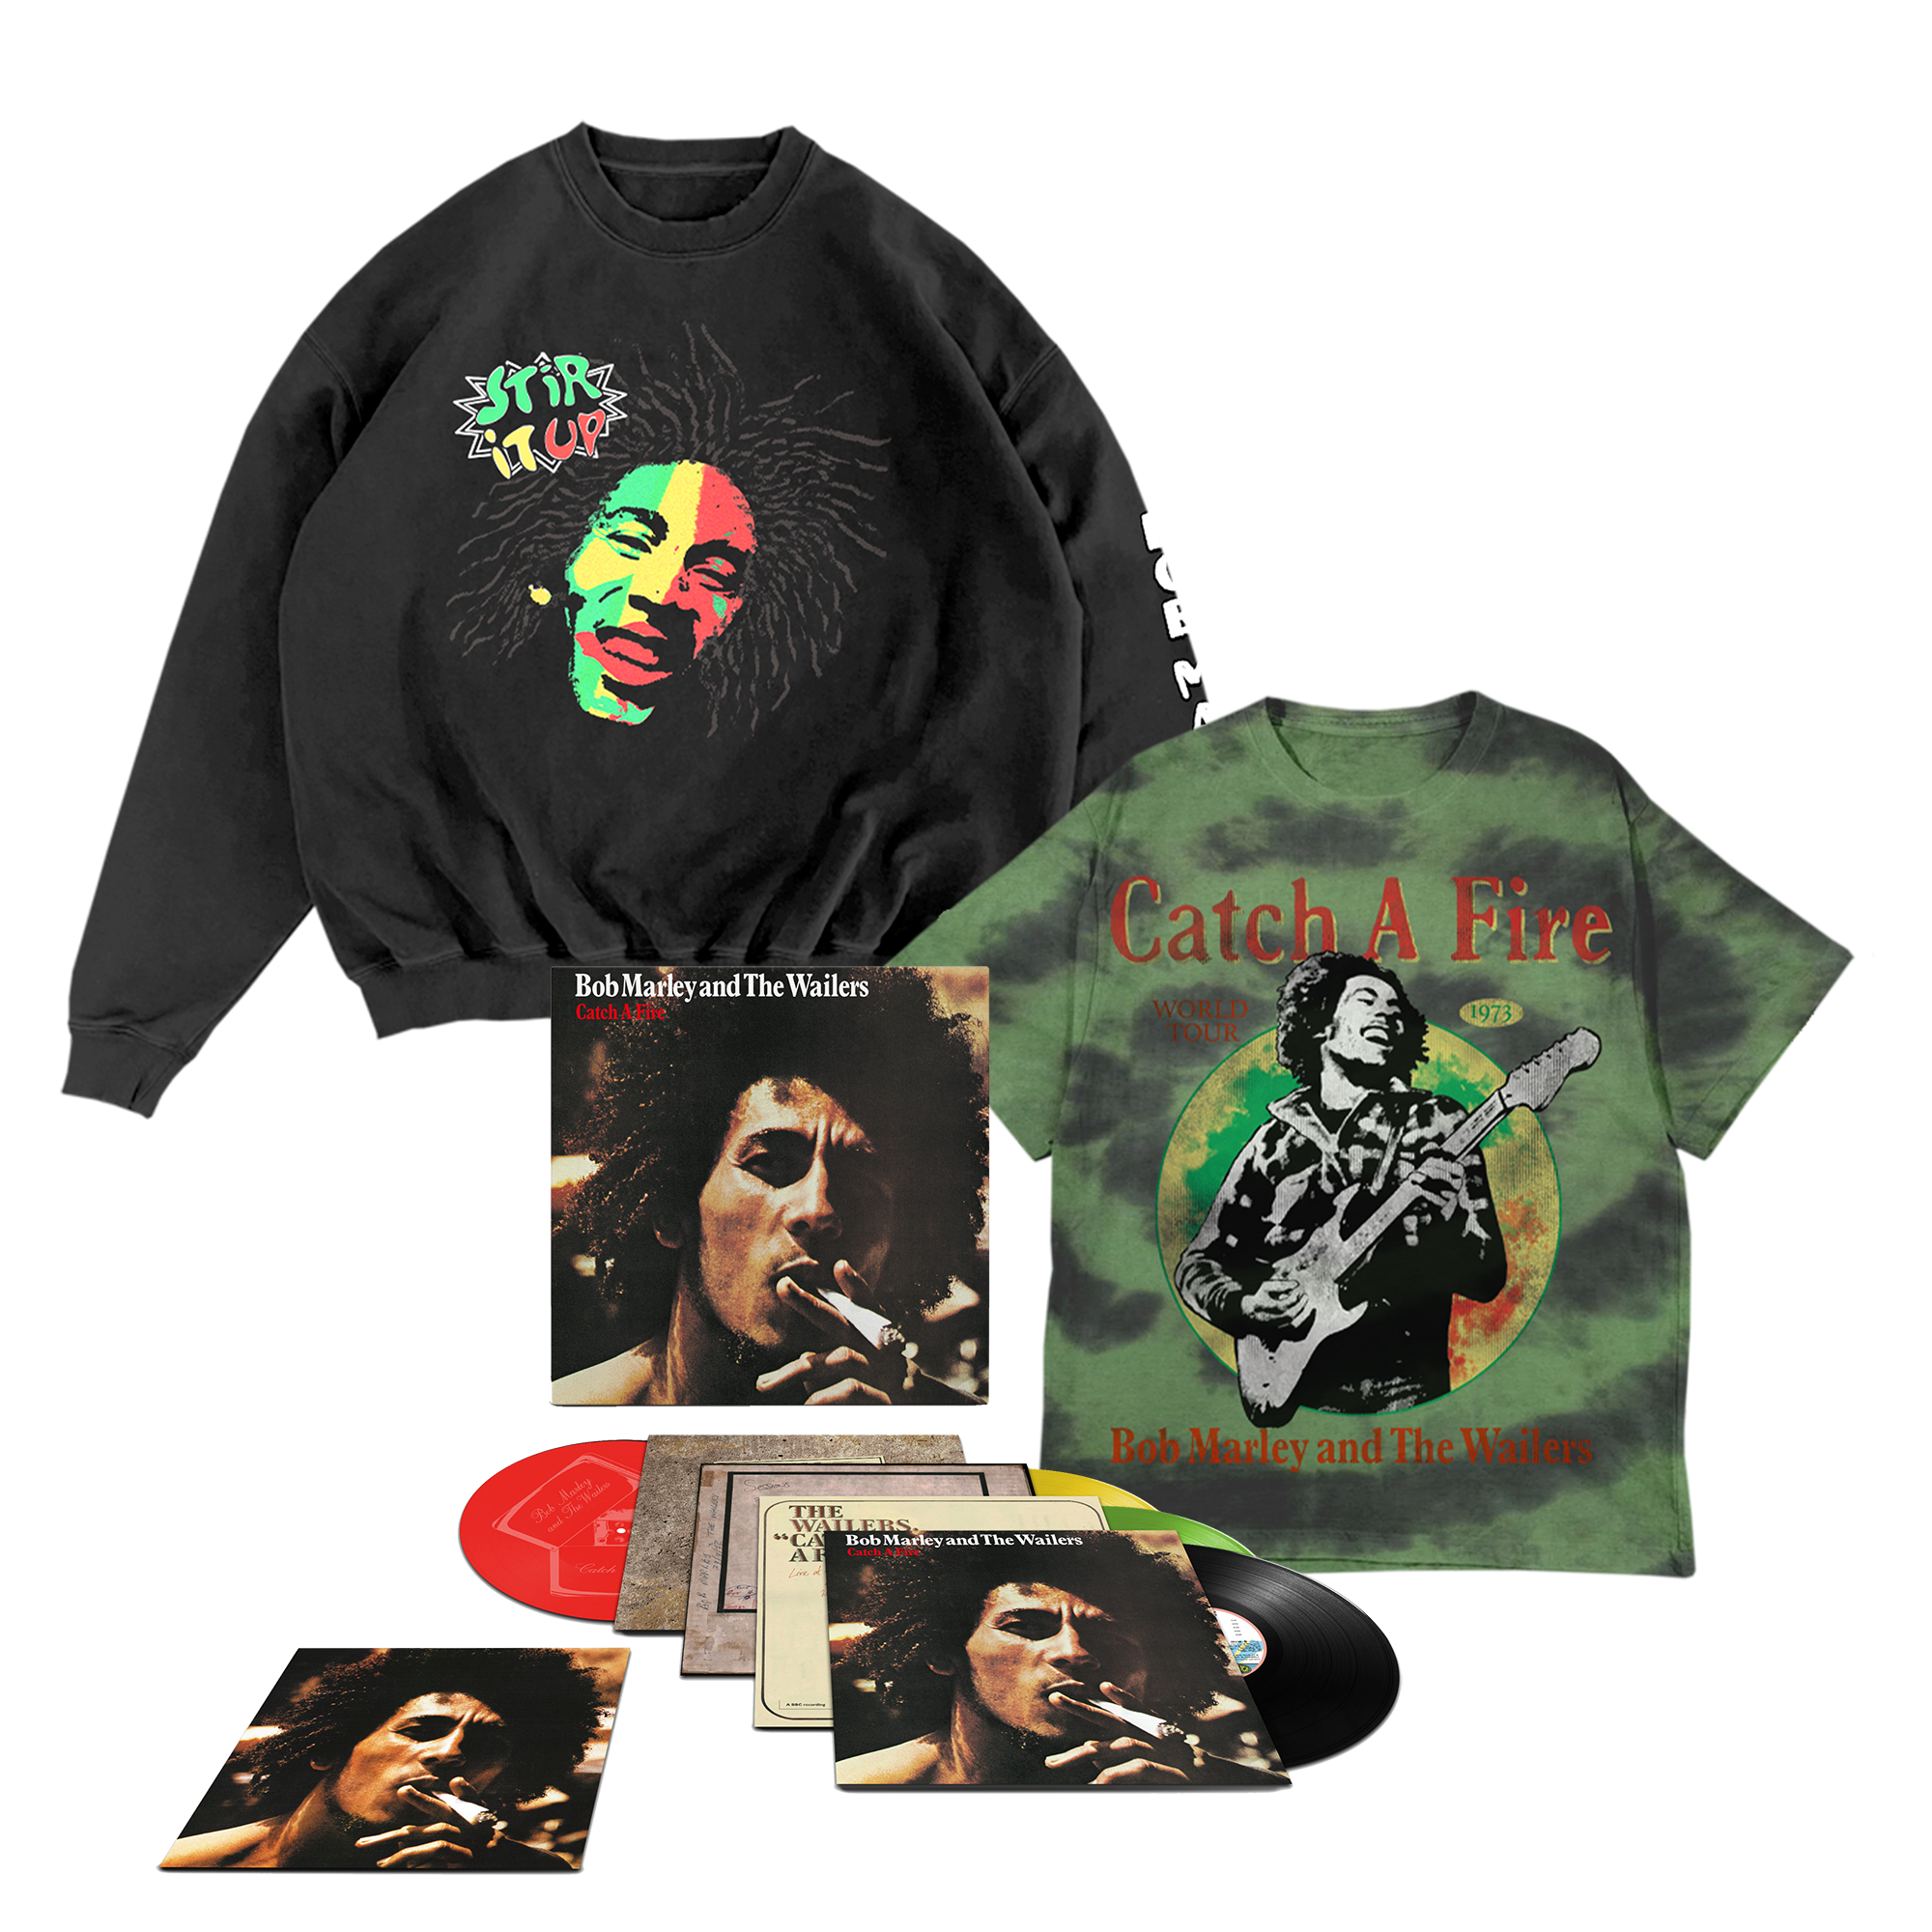 Catch A Fire (50th Anniversary): Exclusive Colour Vinyl 3LP/12", Tie Dye T-Shirt + Stir It Up Crewneck